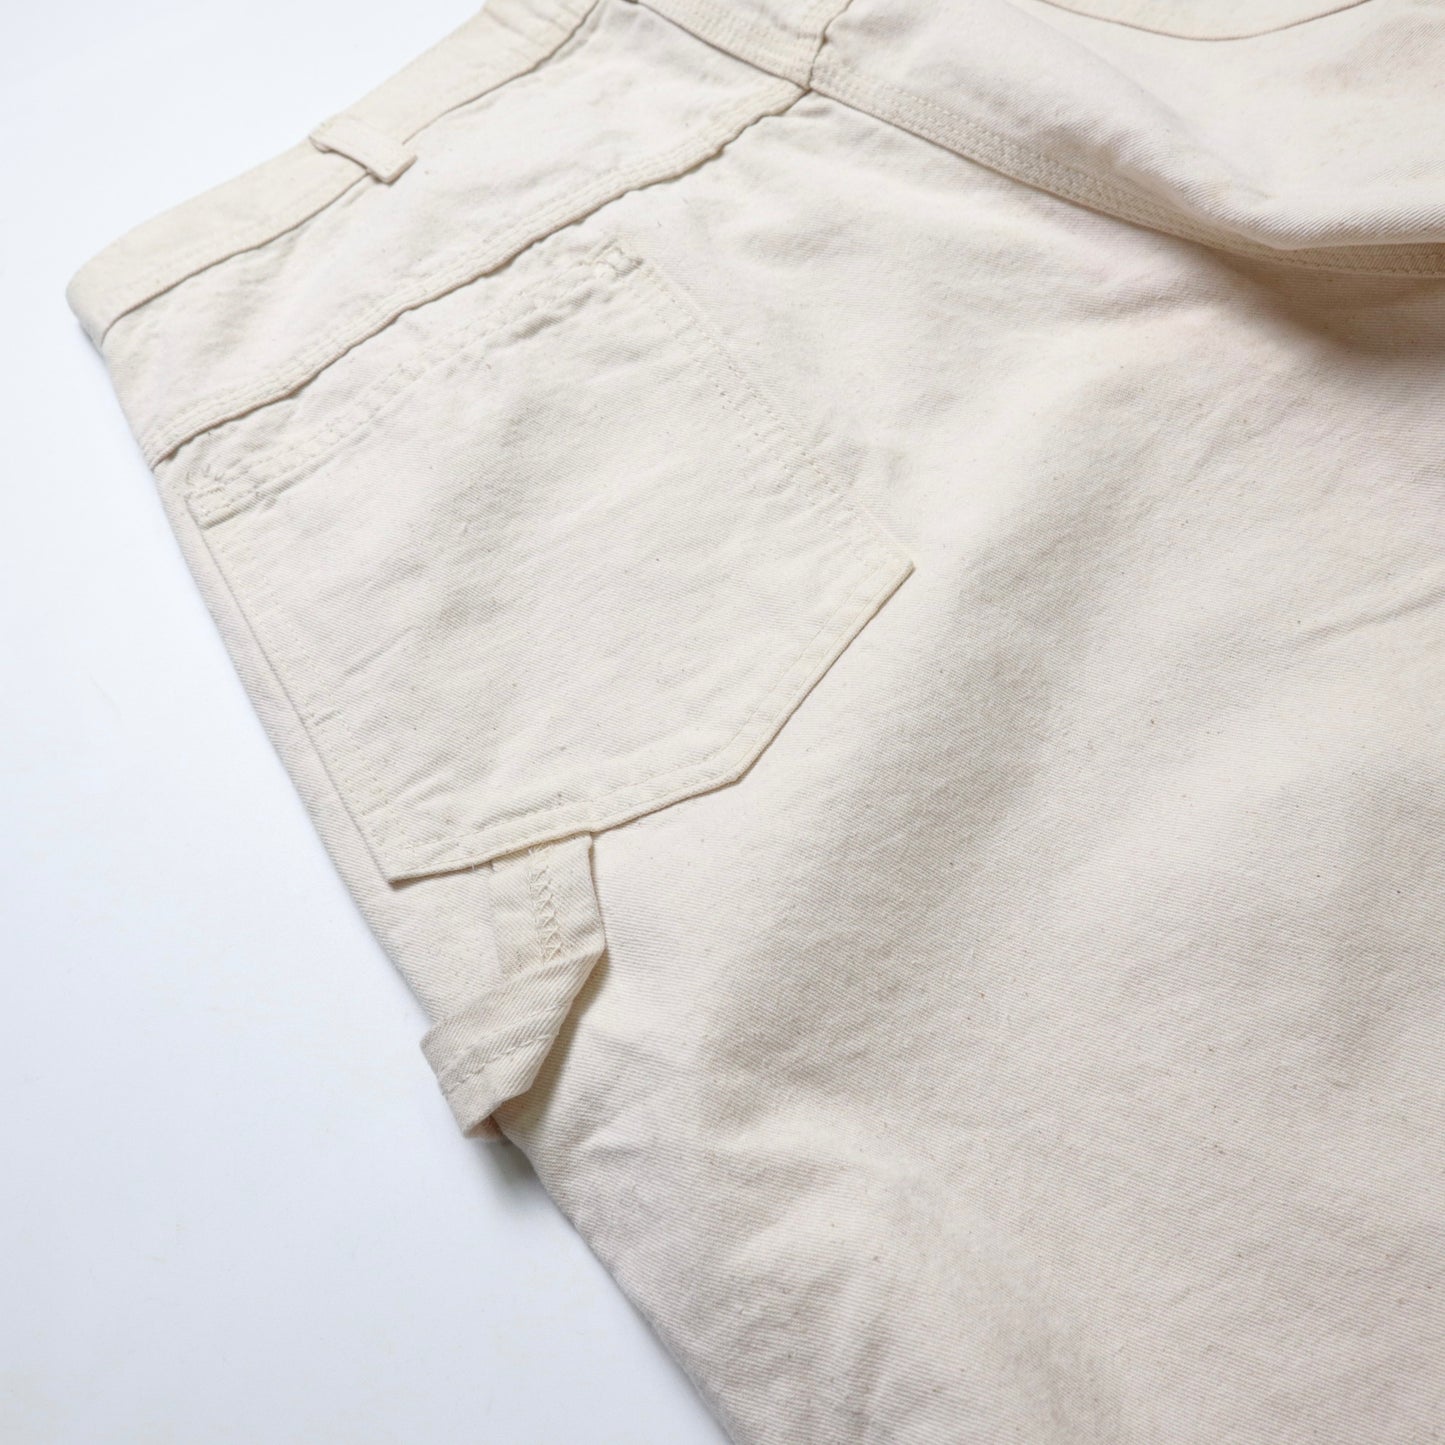 (36W) 80's Key American-made off-white work pants Talon zipper